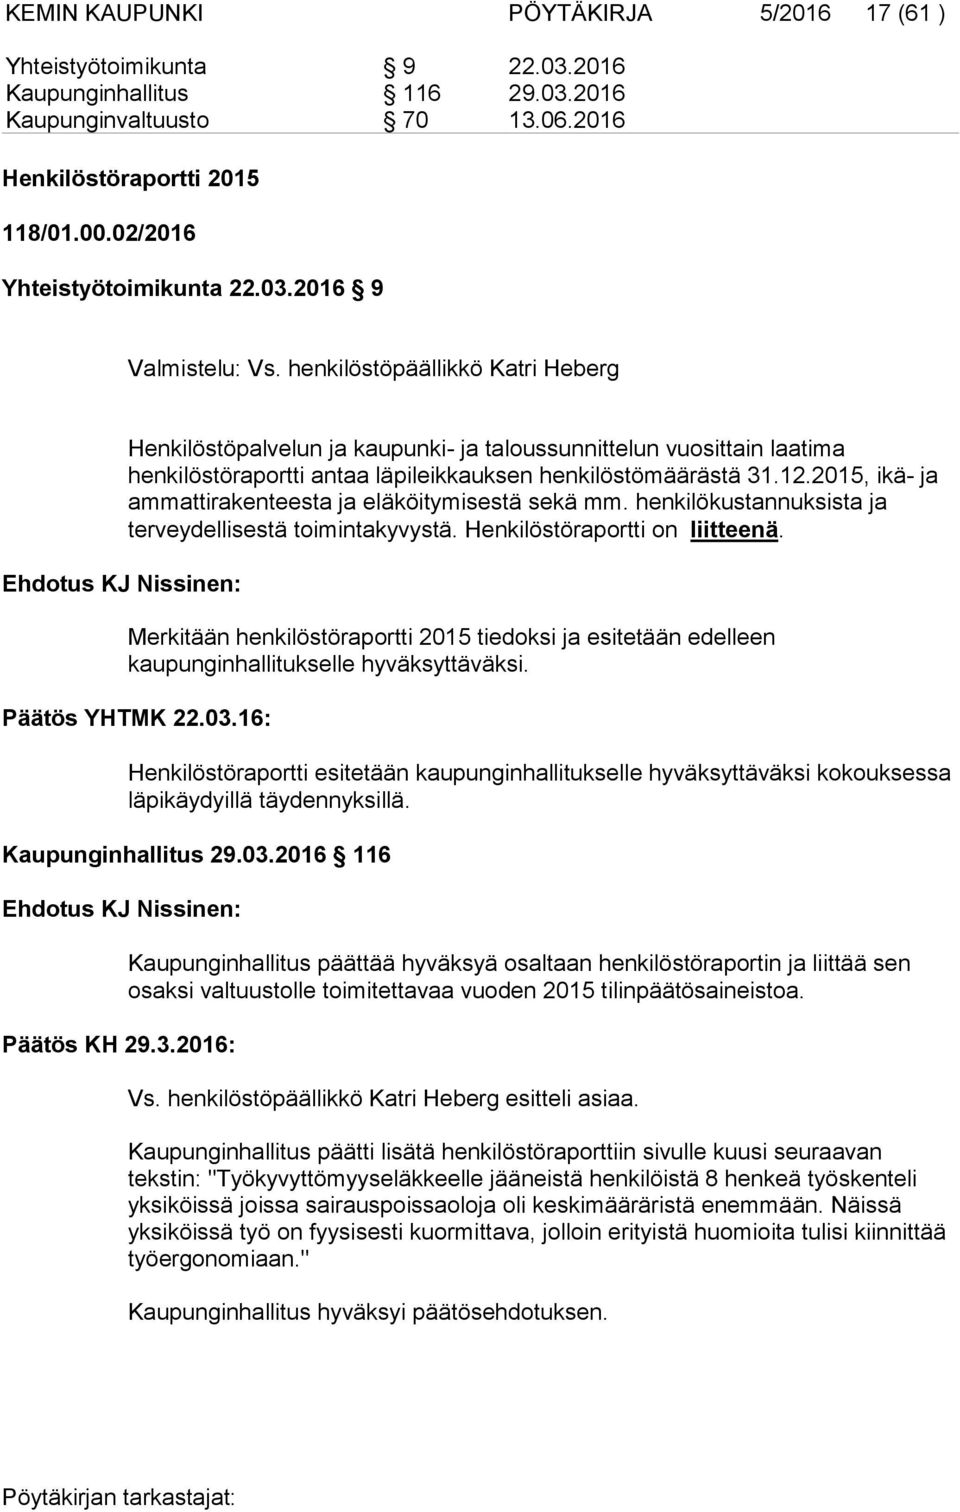 henkilöstöpäällikkö Katri Heberg Ehdotus KJ Nissinen: Henkilöstöpalvelun ja kaupunki- ja taloussunnittelun vuosittain laatima henkilöstöraportti antaa läpileikkauksen henkilöstömäärästä 31.12.